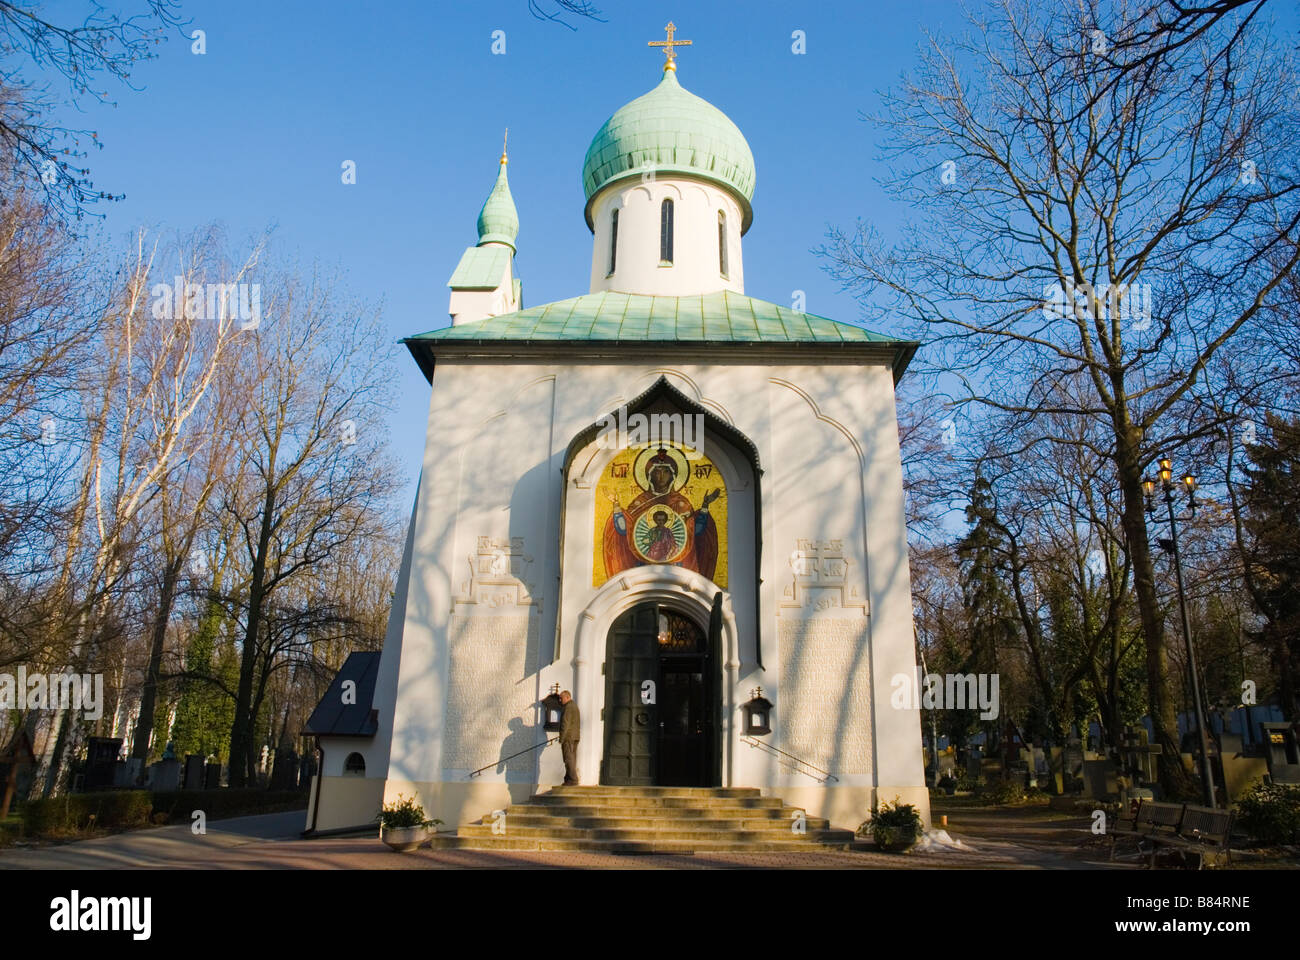 Kaple Blahoslavene Bohoradice orthodoxe Kapelle am Vojensky Hrbitov dem Soldatenfriedhof in Stadtteil Zizkov in Prag Stockfoto